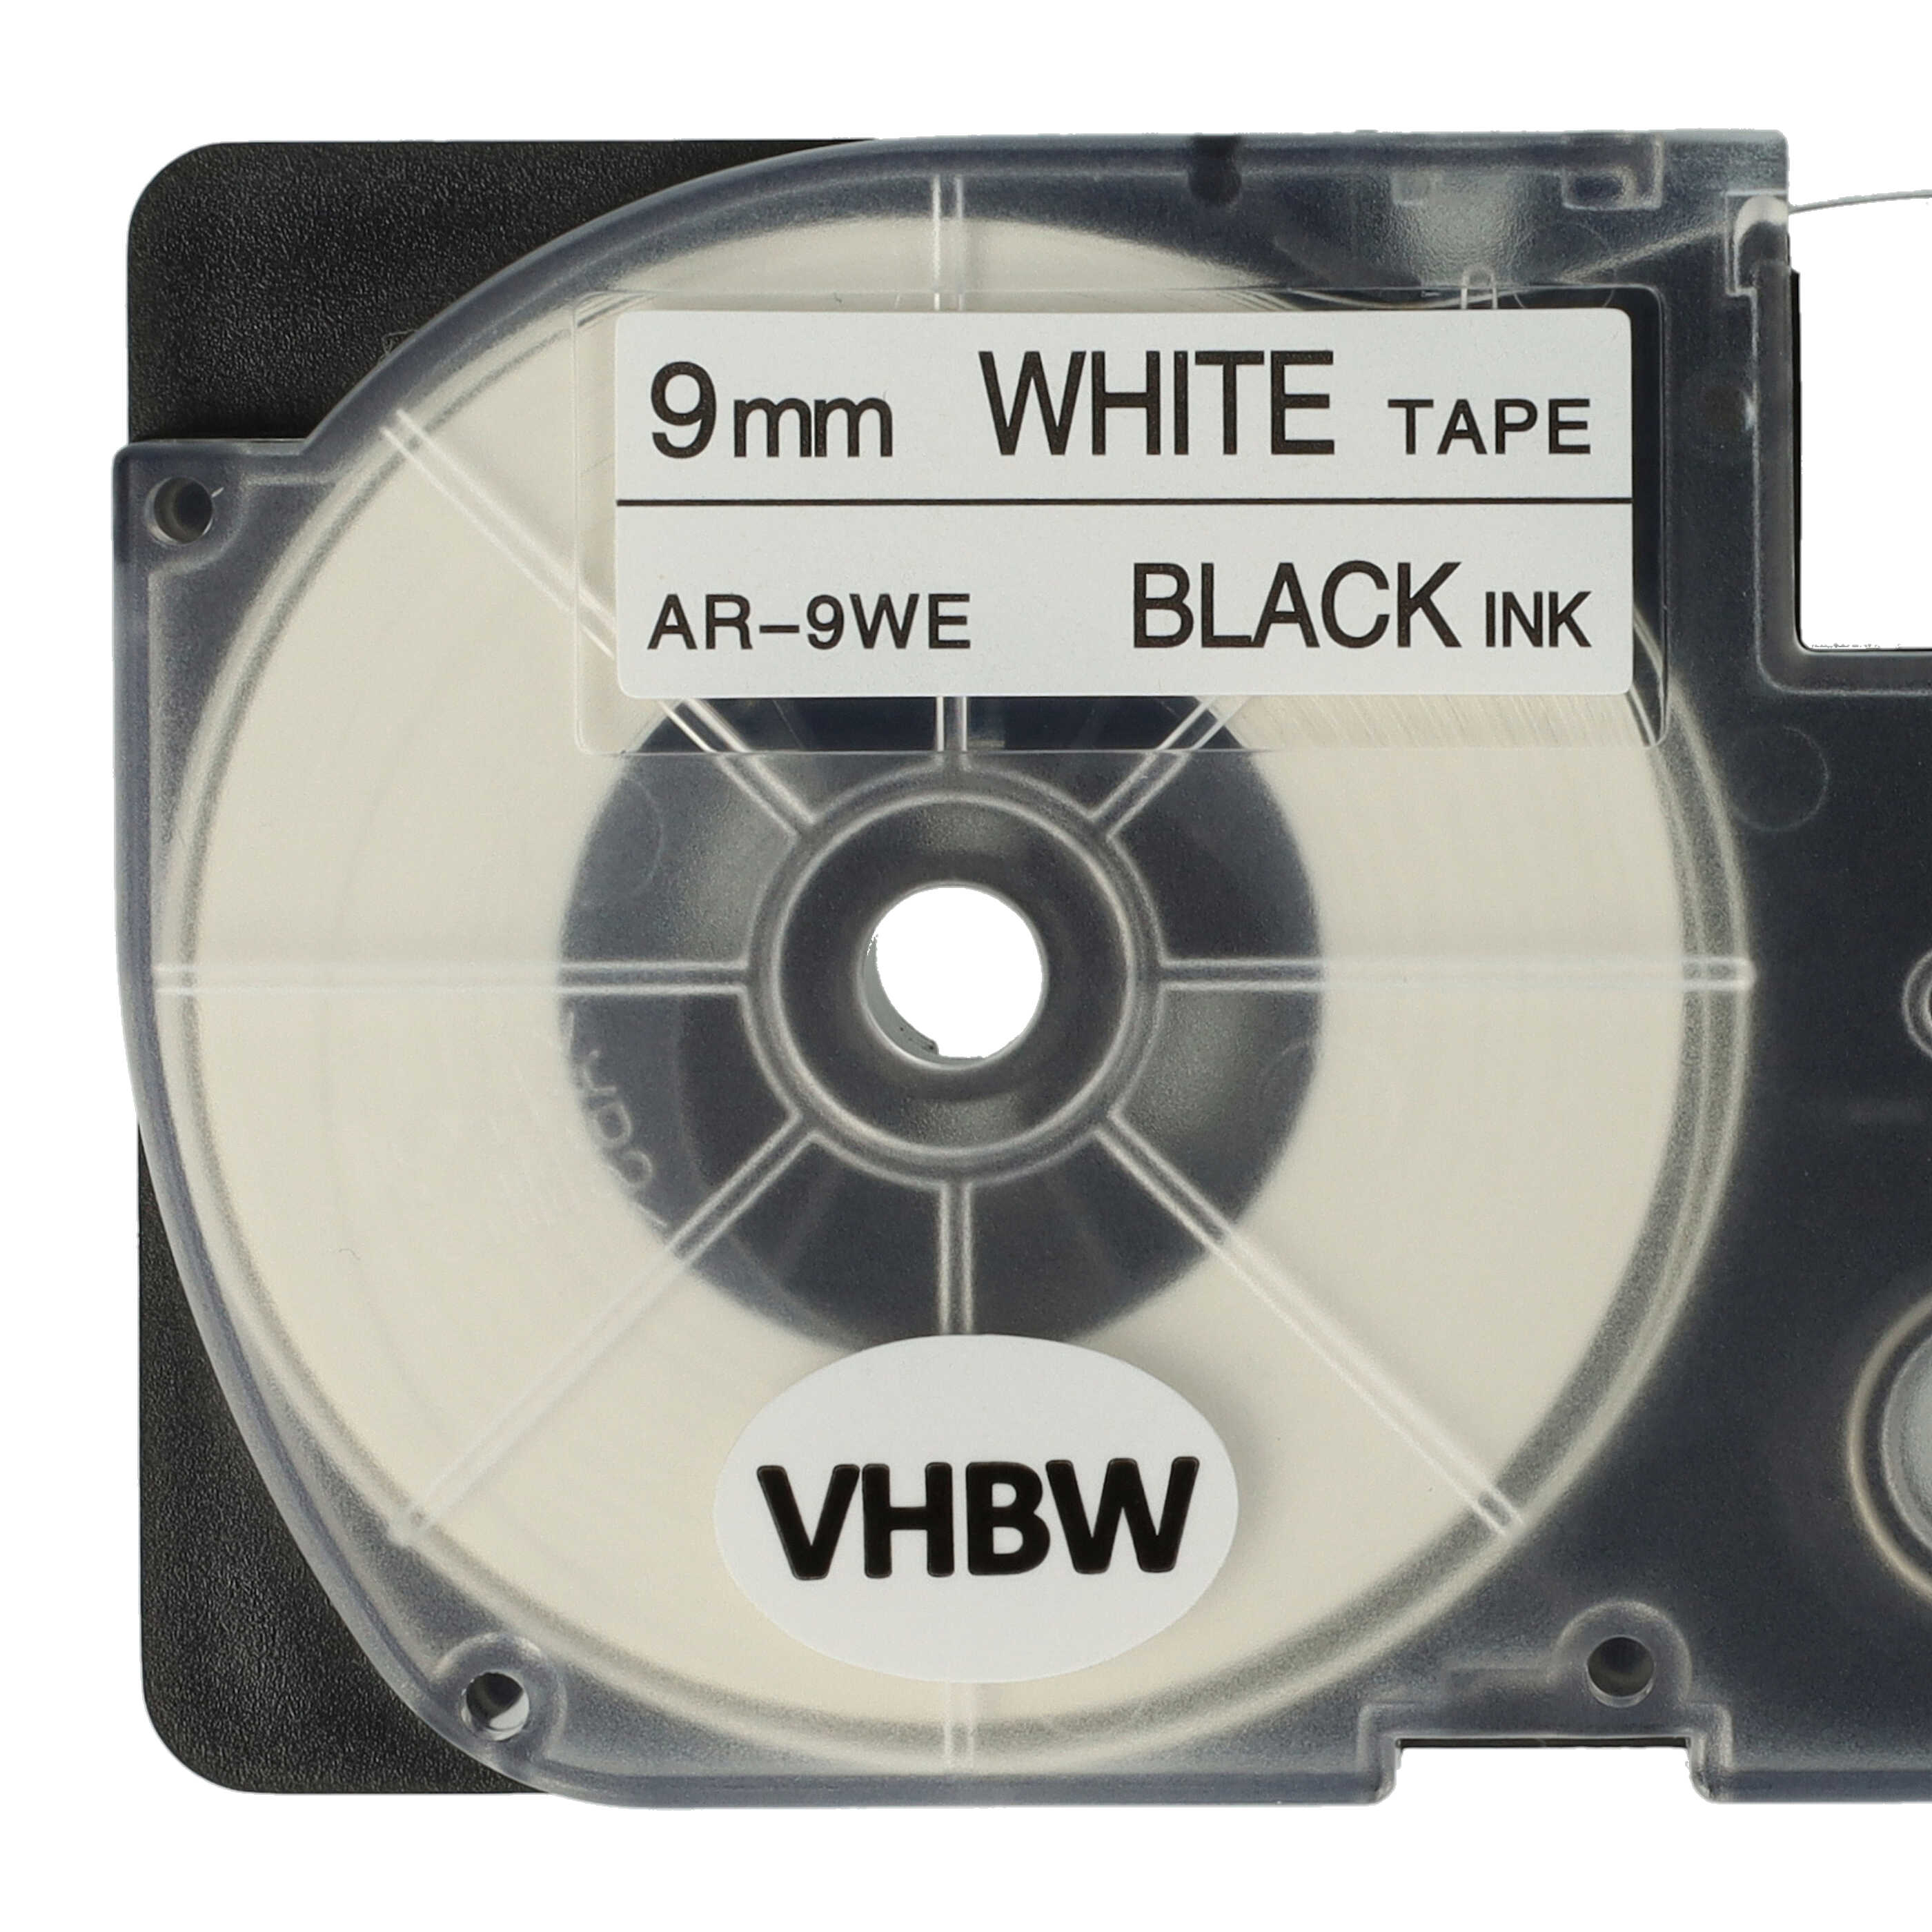 5x Casete cinta escritura reemplaza Casio XR-9WE1 Negro su Blanco